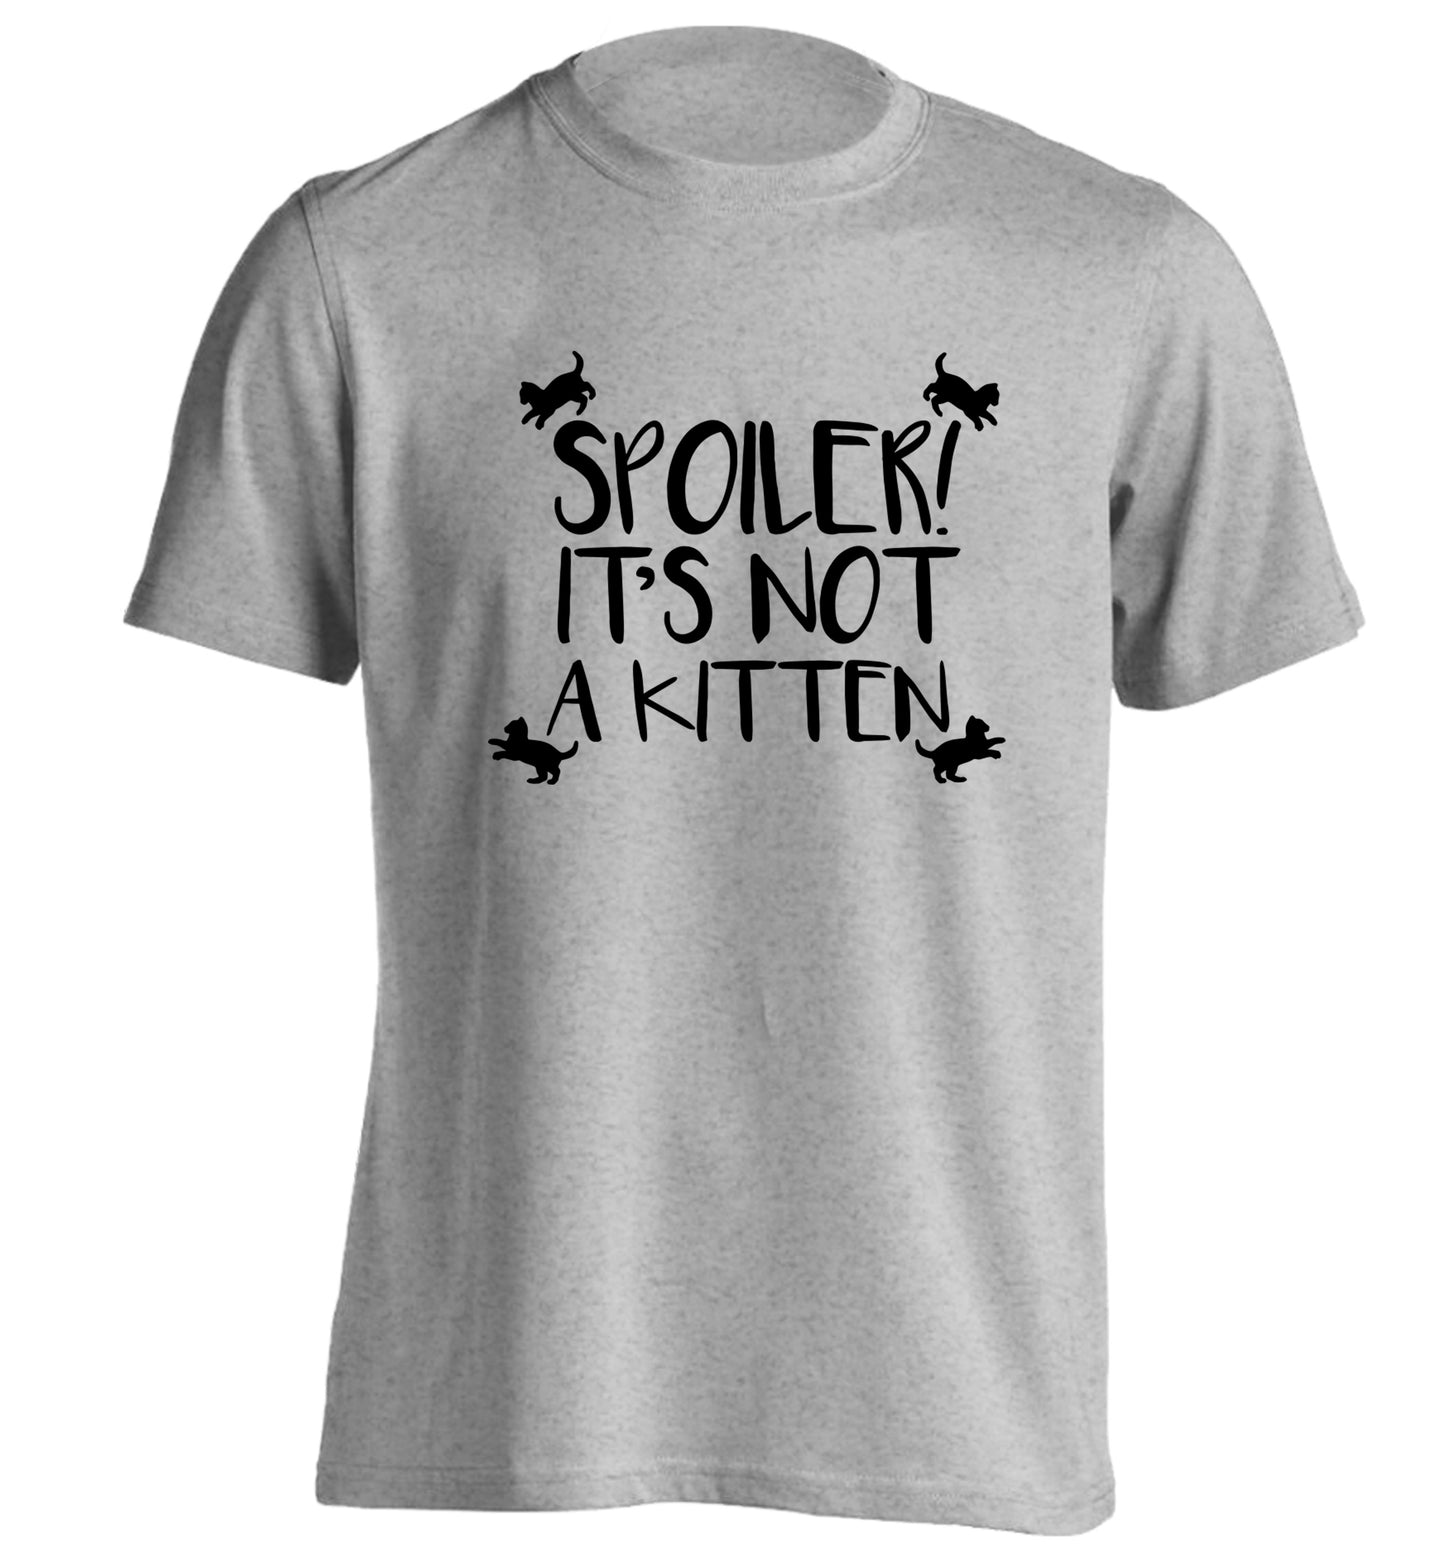 Spoiler it's not a kitten adults unisex grey Tshirt 2XL